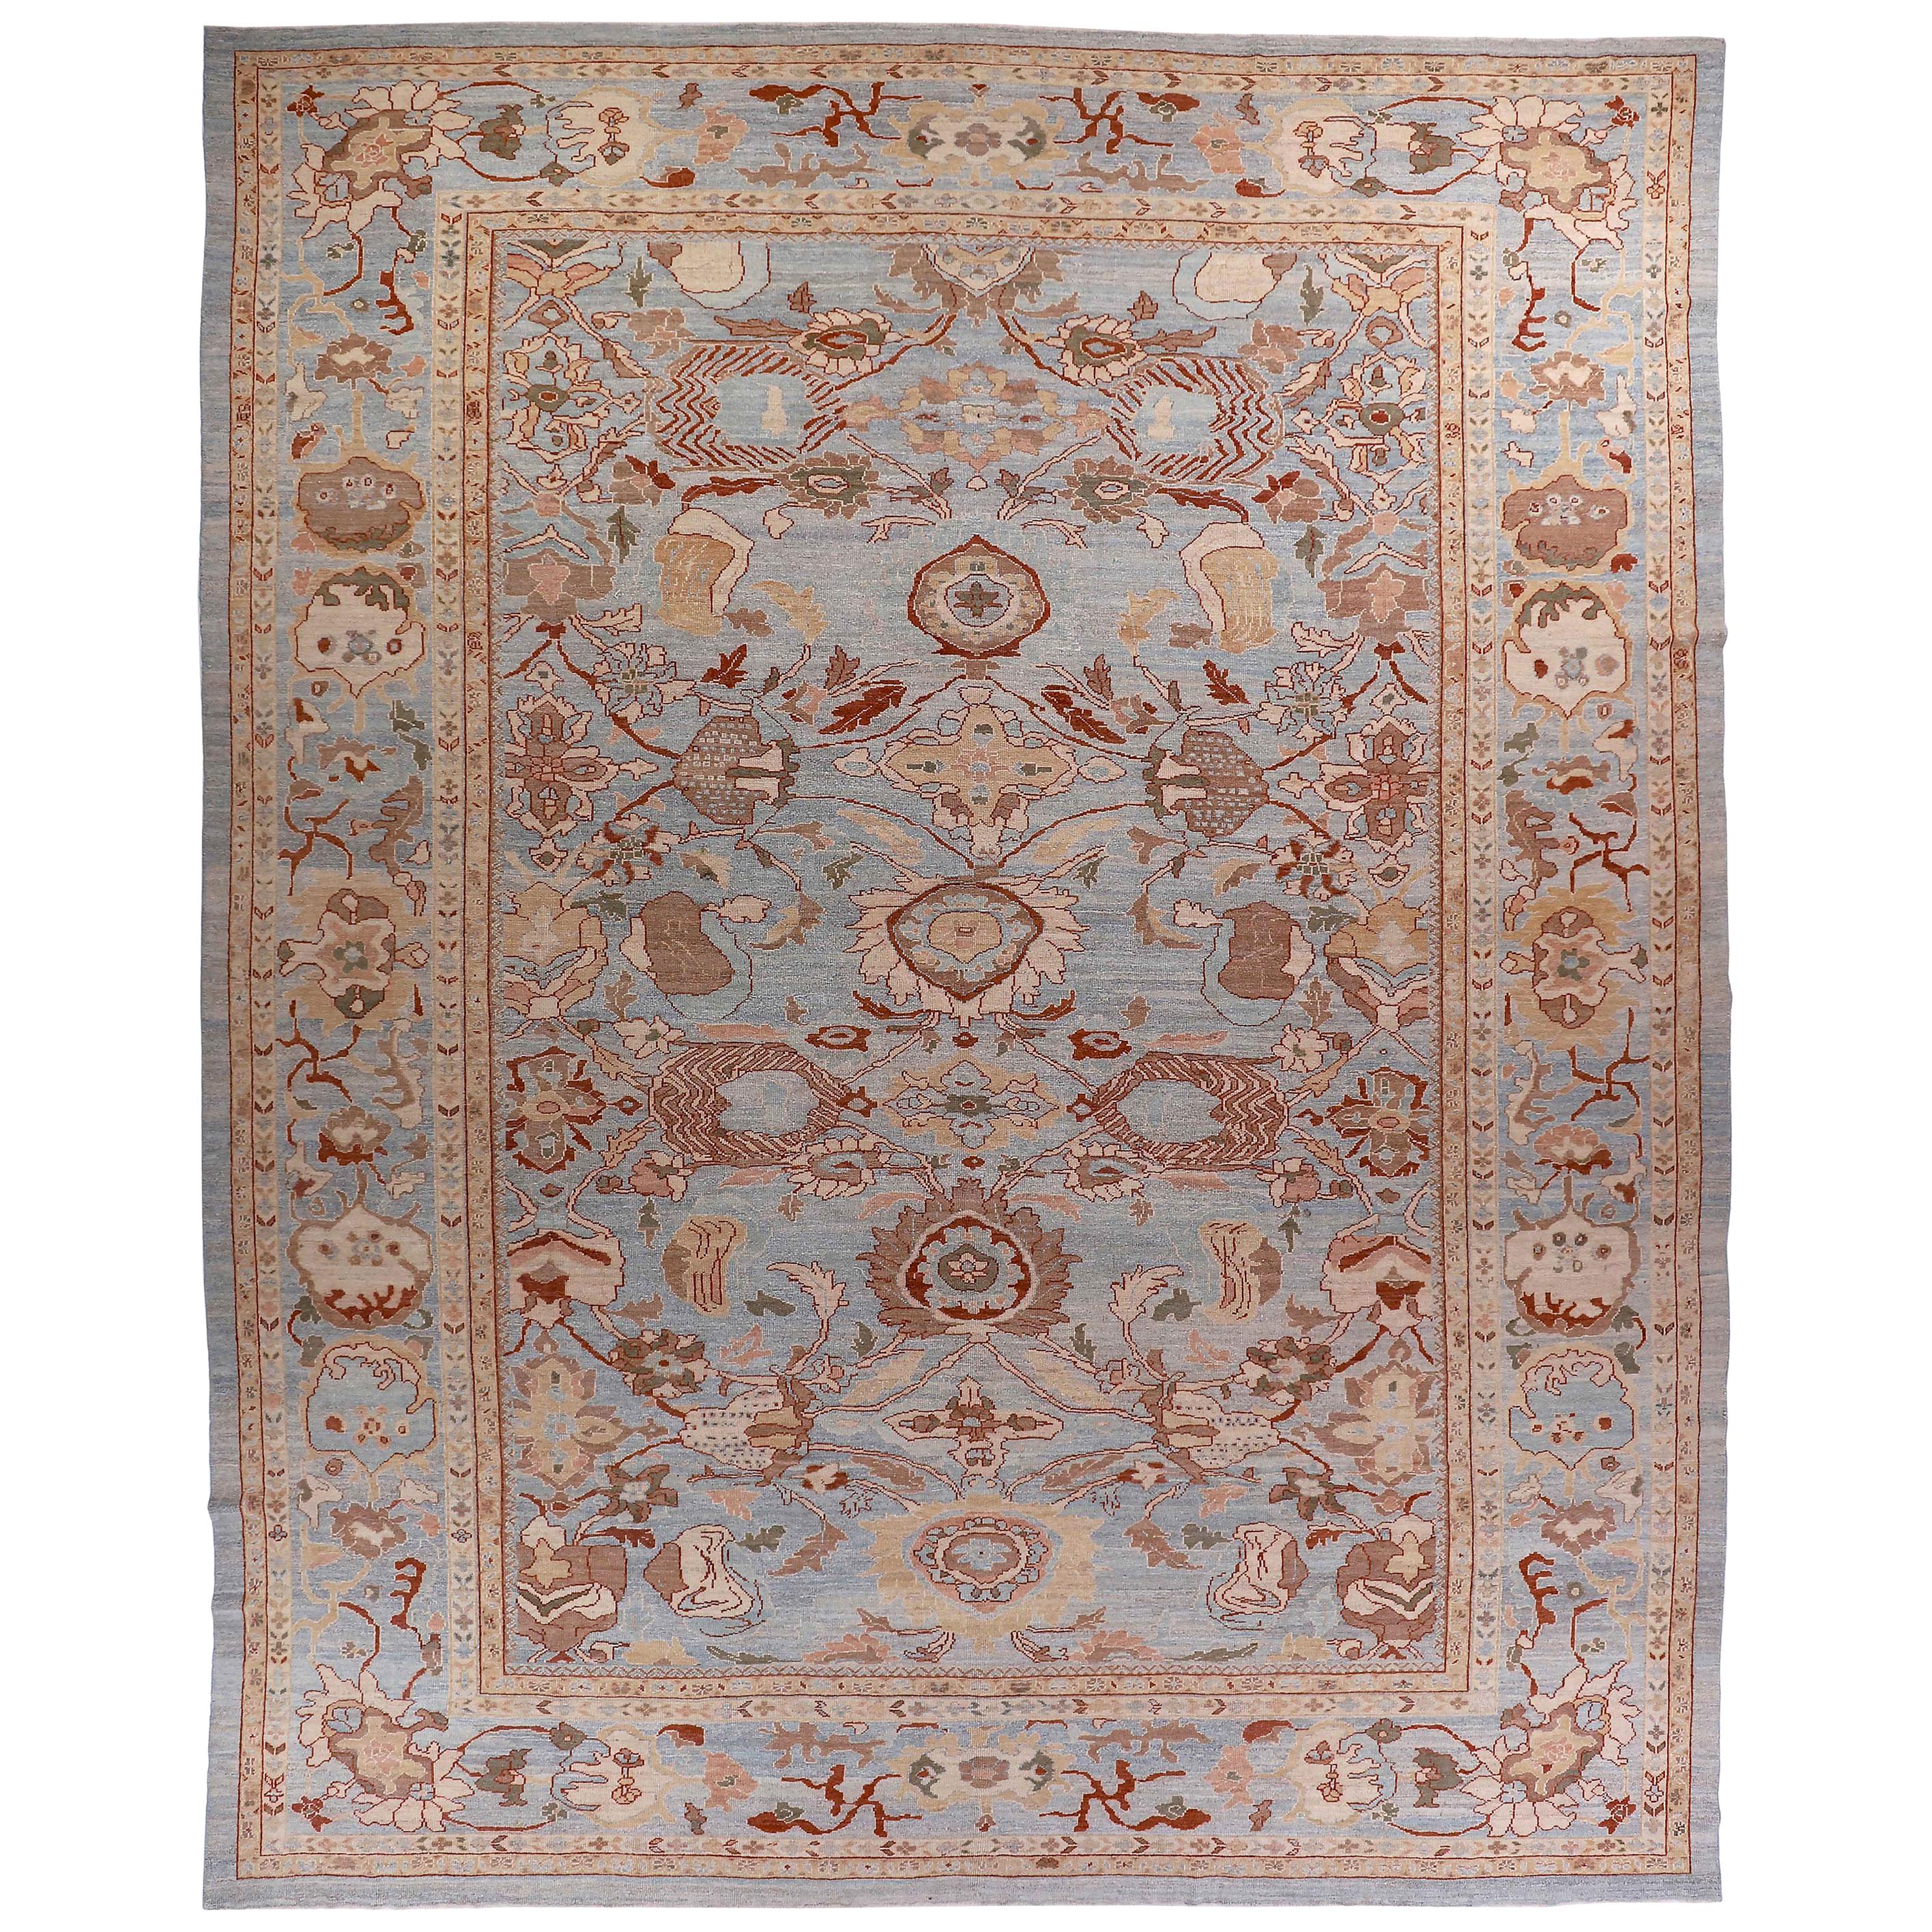 Grand tapis persan de style Oushak à motifs floraux beige & marron sur fond bleu